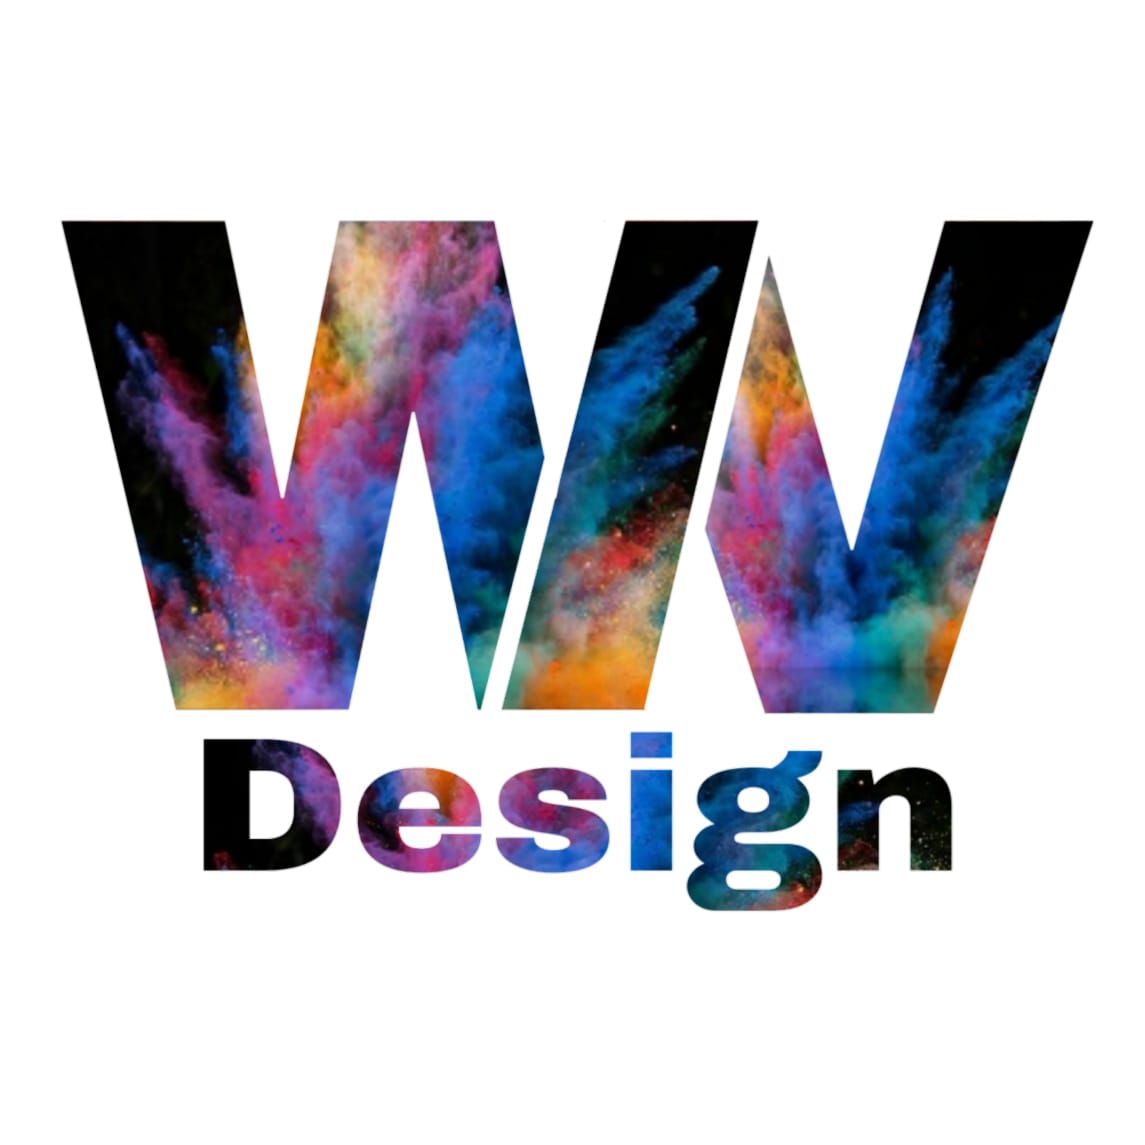 WN Design